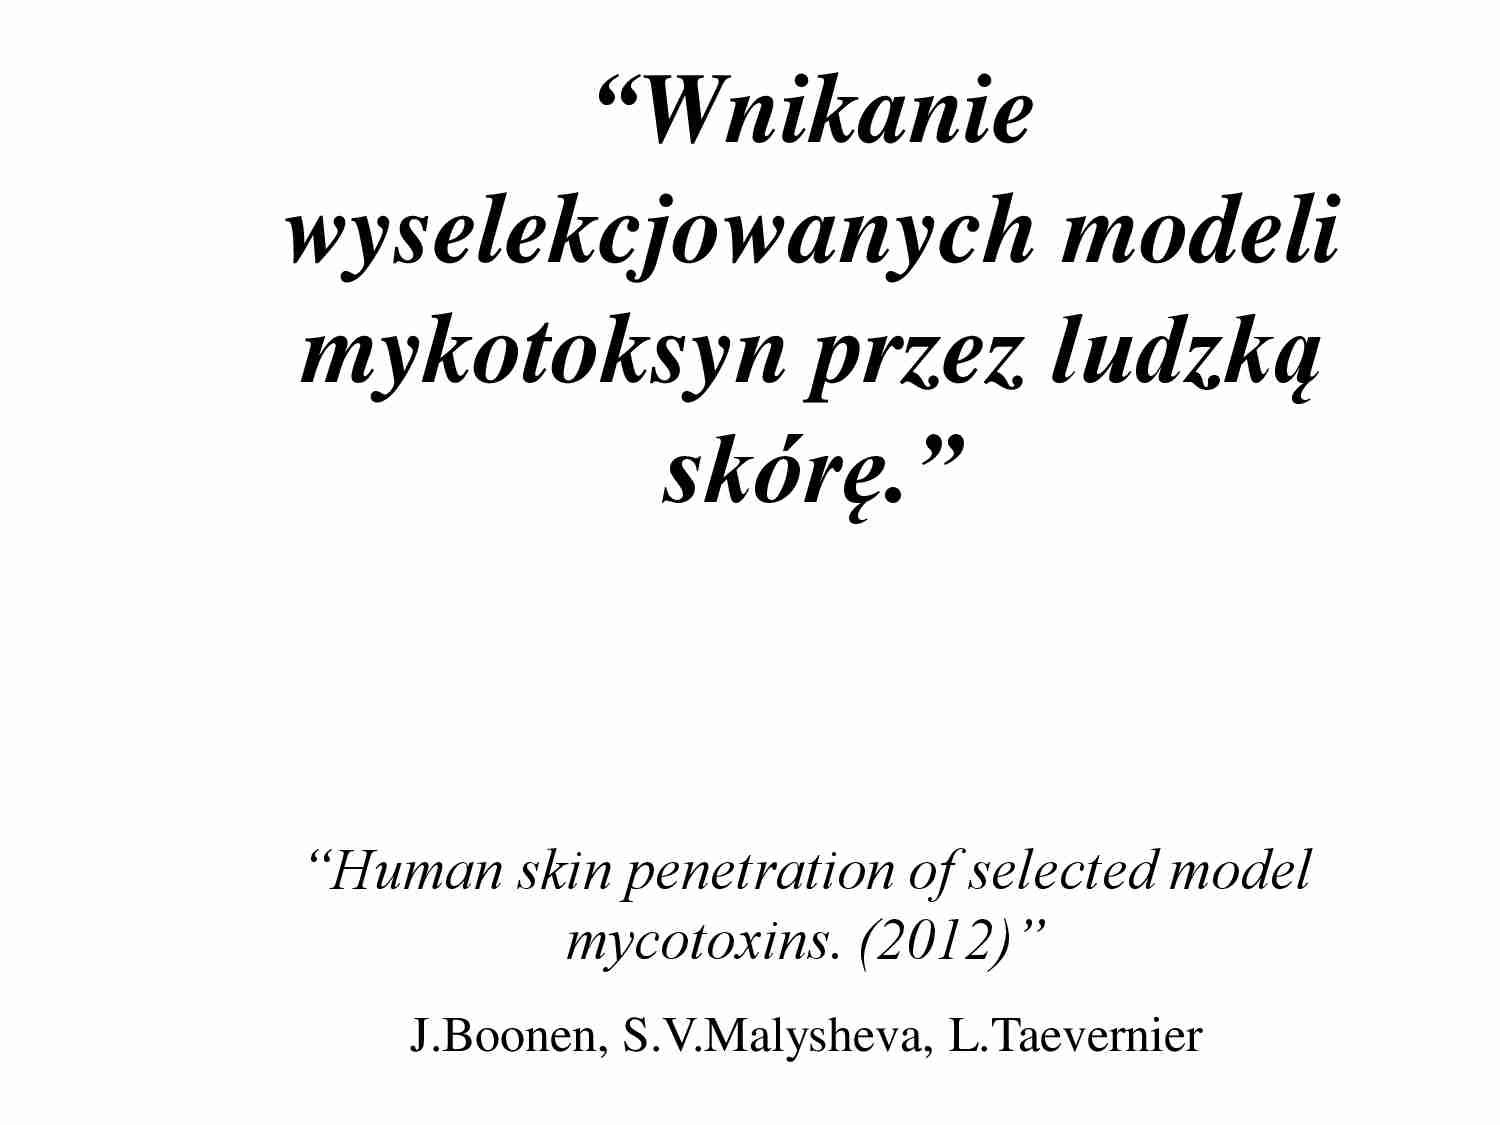 Wnikanie wyselekcjonowanych modeli mykotoksyn przez ludzka skórę - strona 1